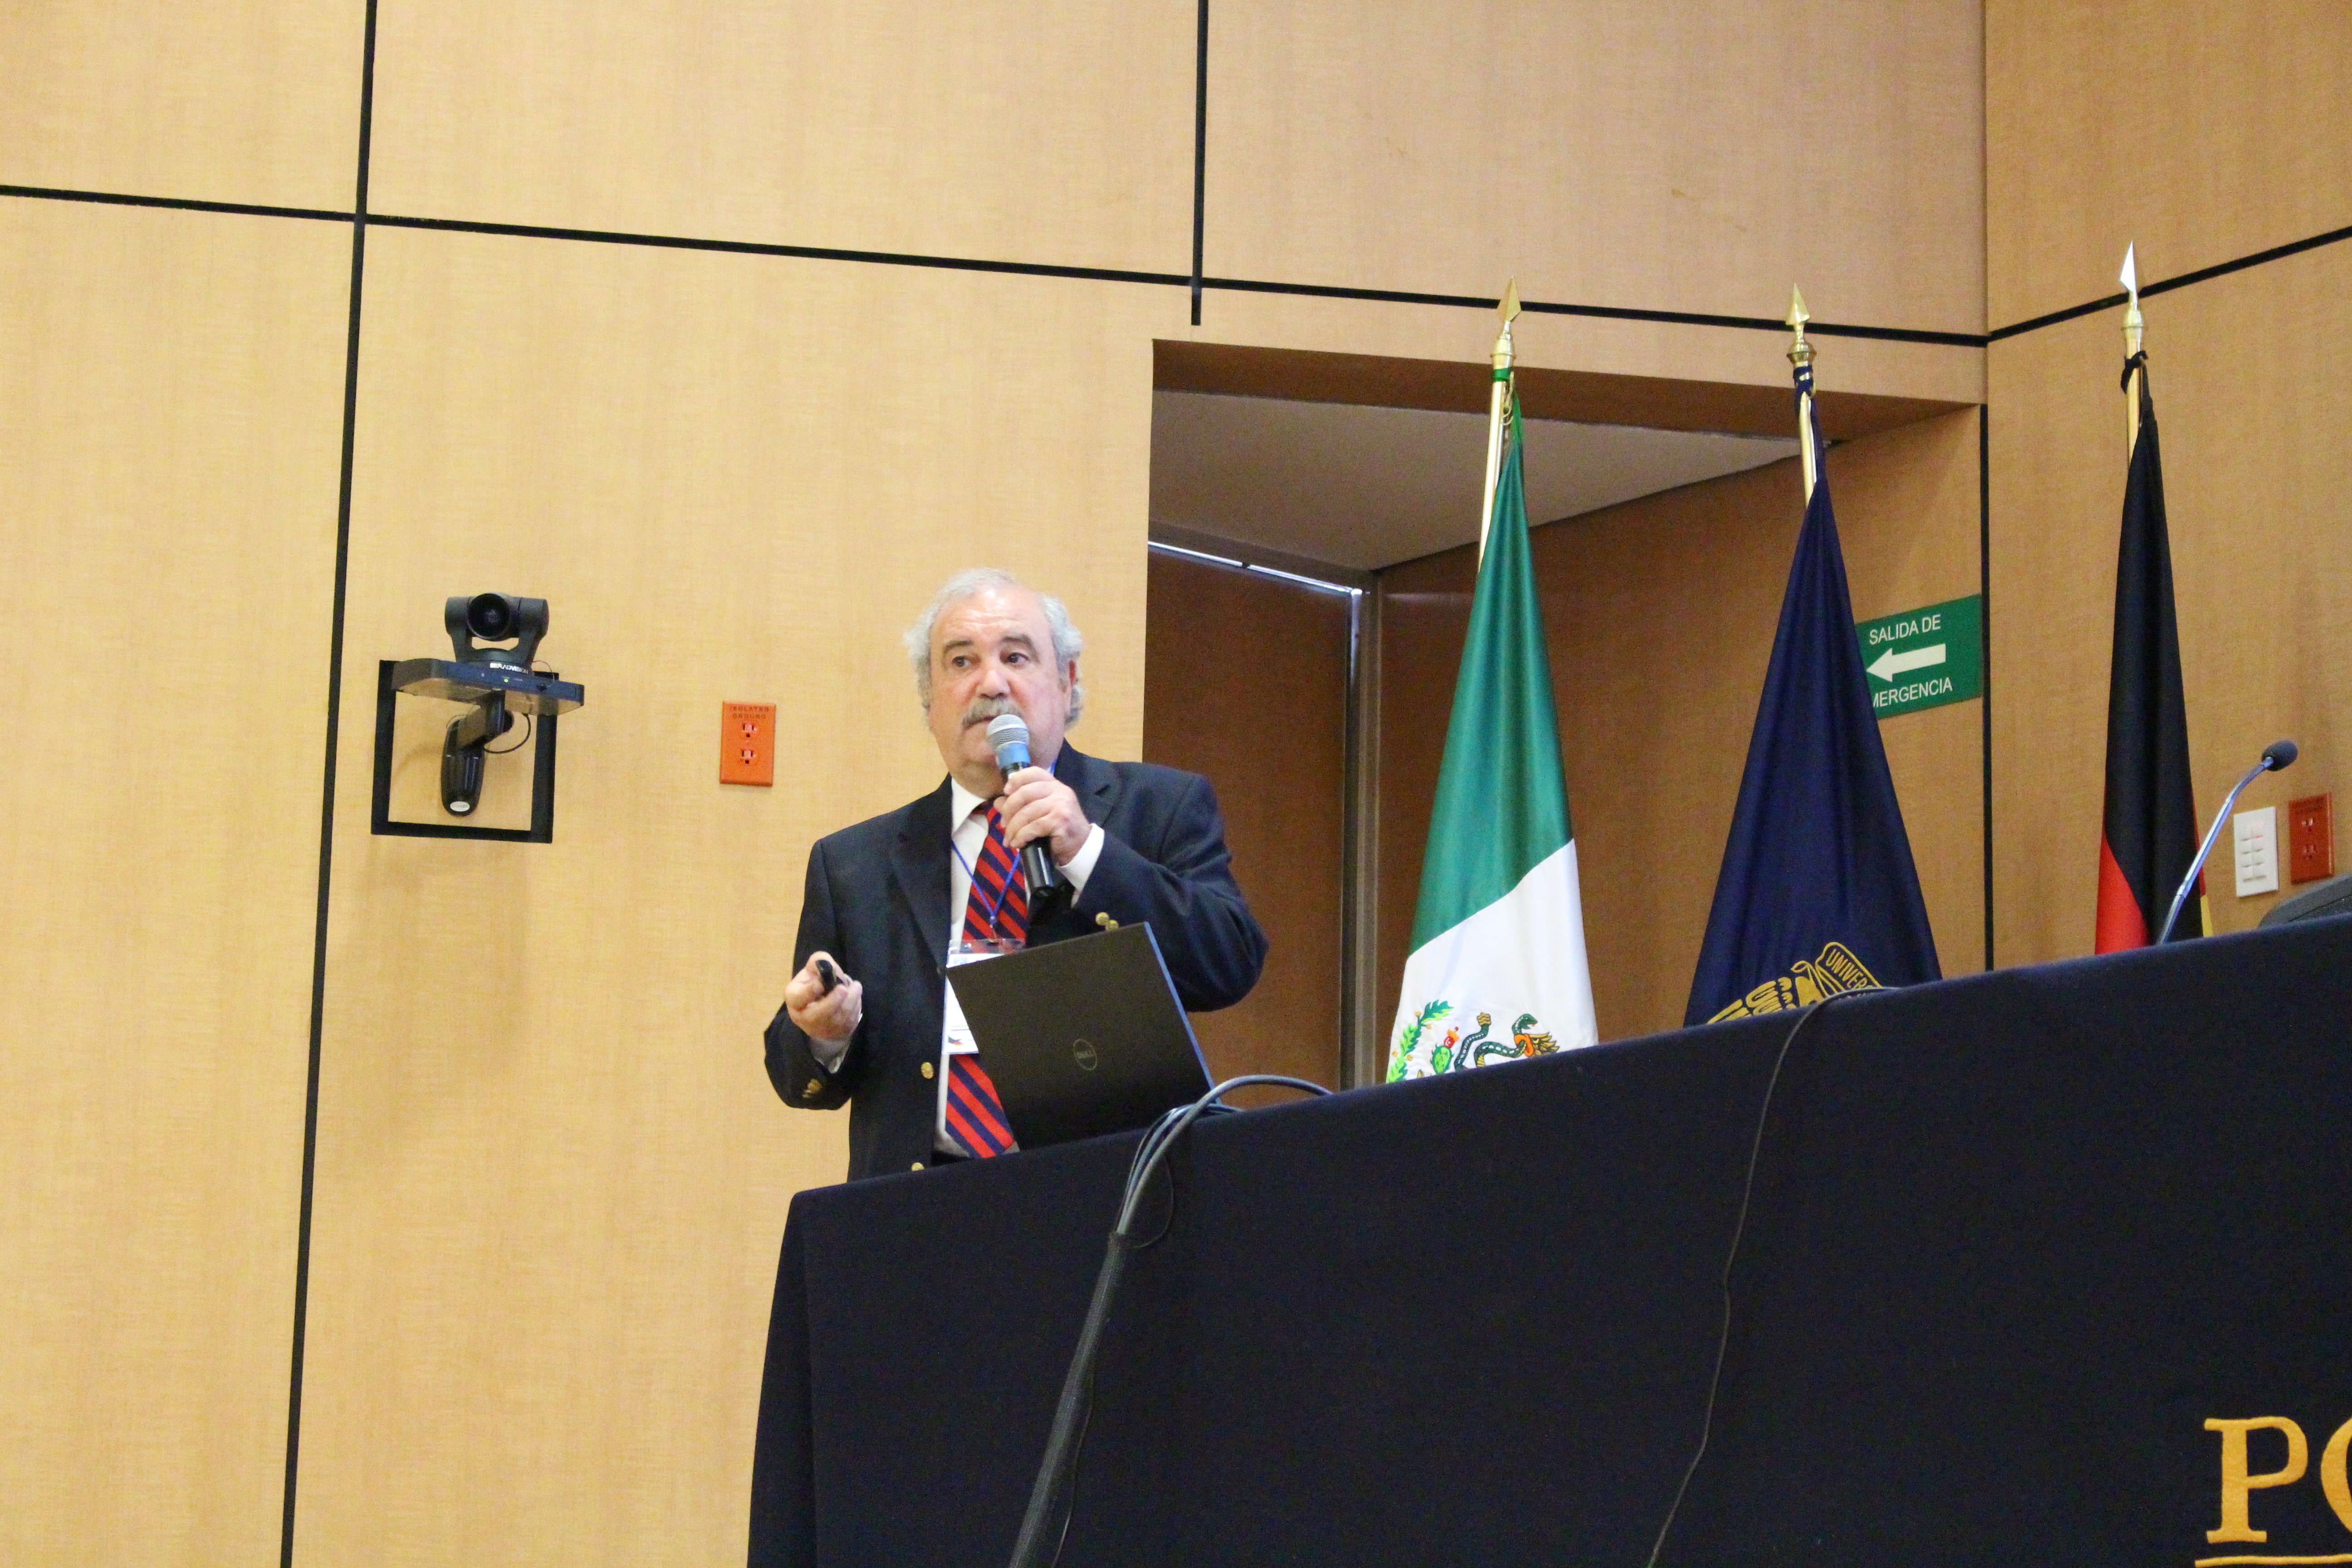 Carlos Arámburo (UNAM) explained the UNAM funding programme PAPIIT